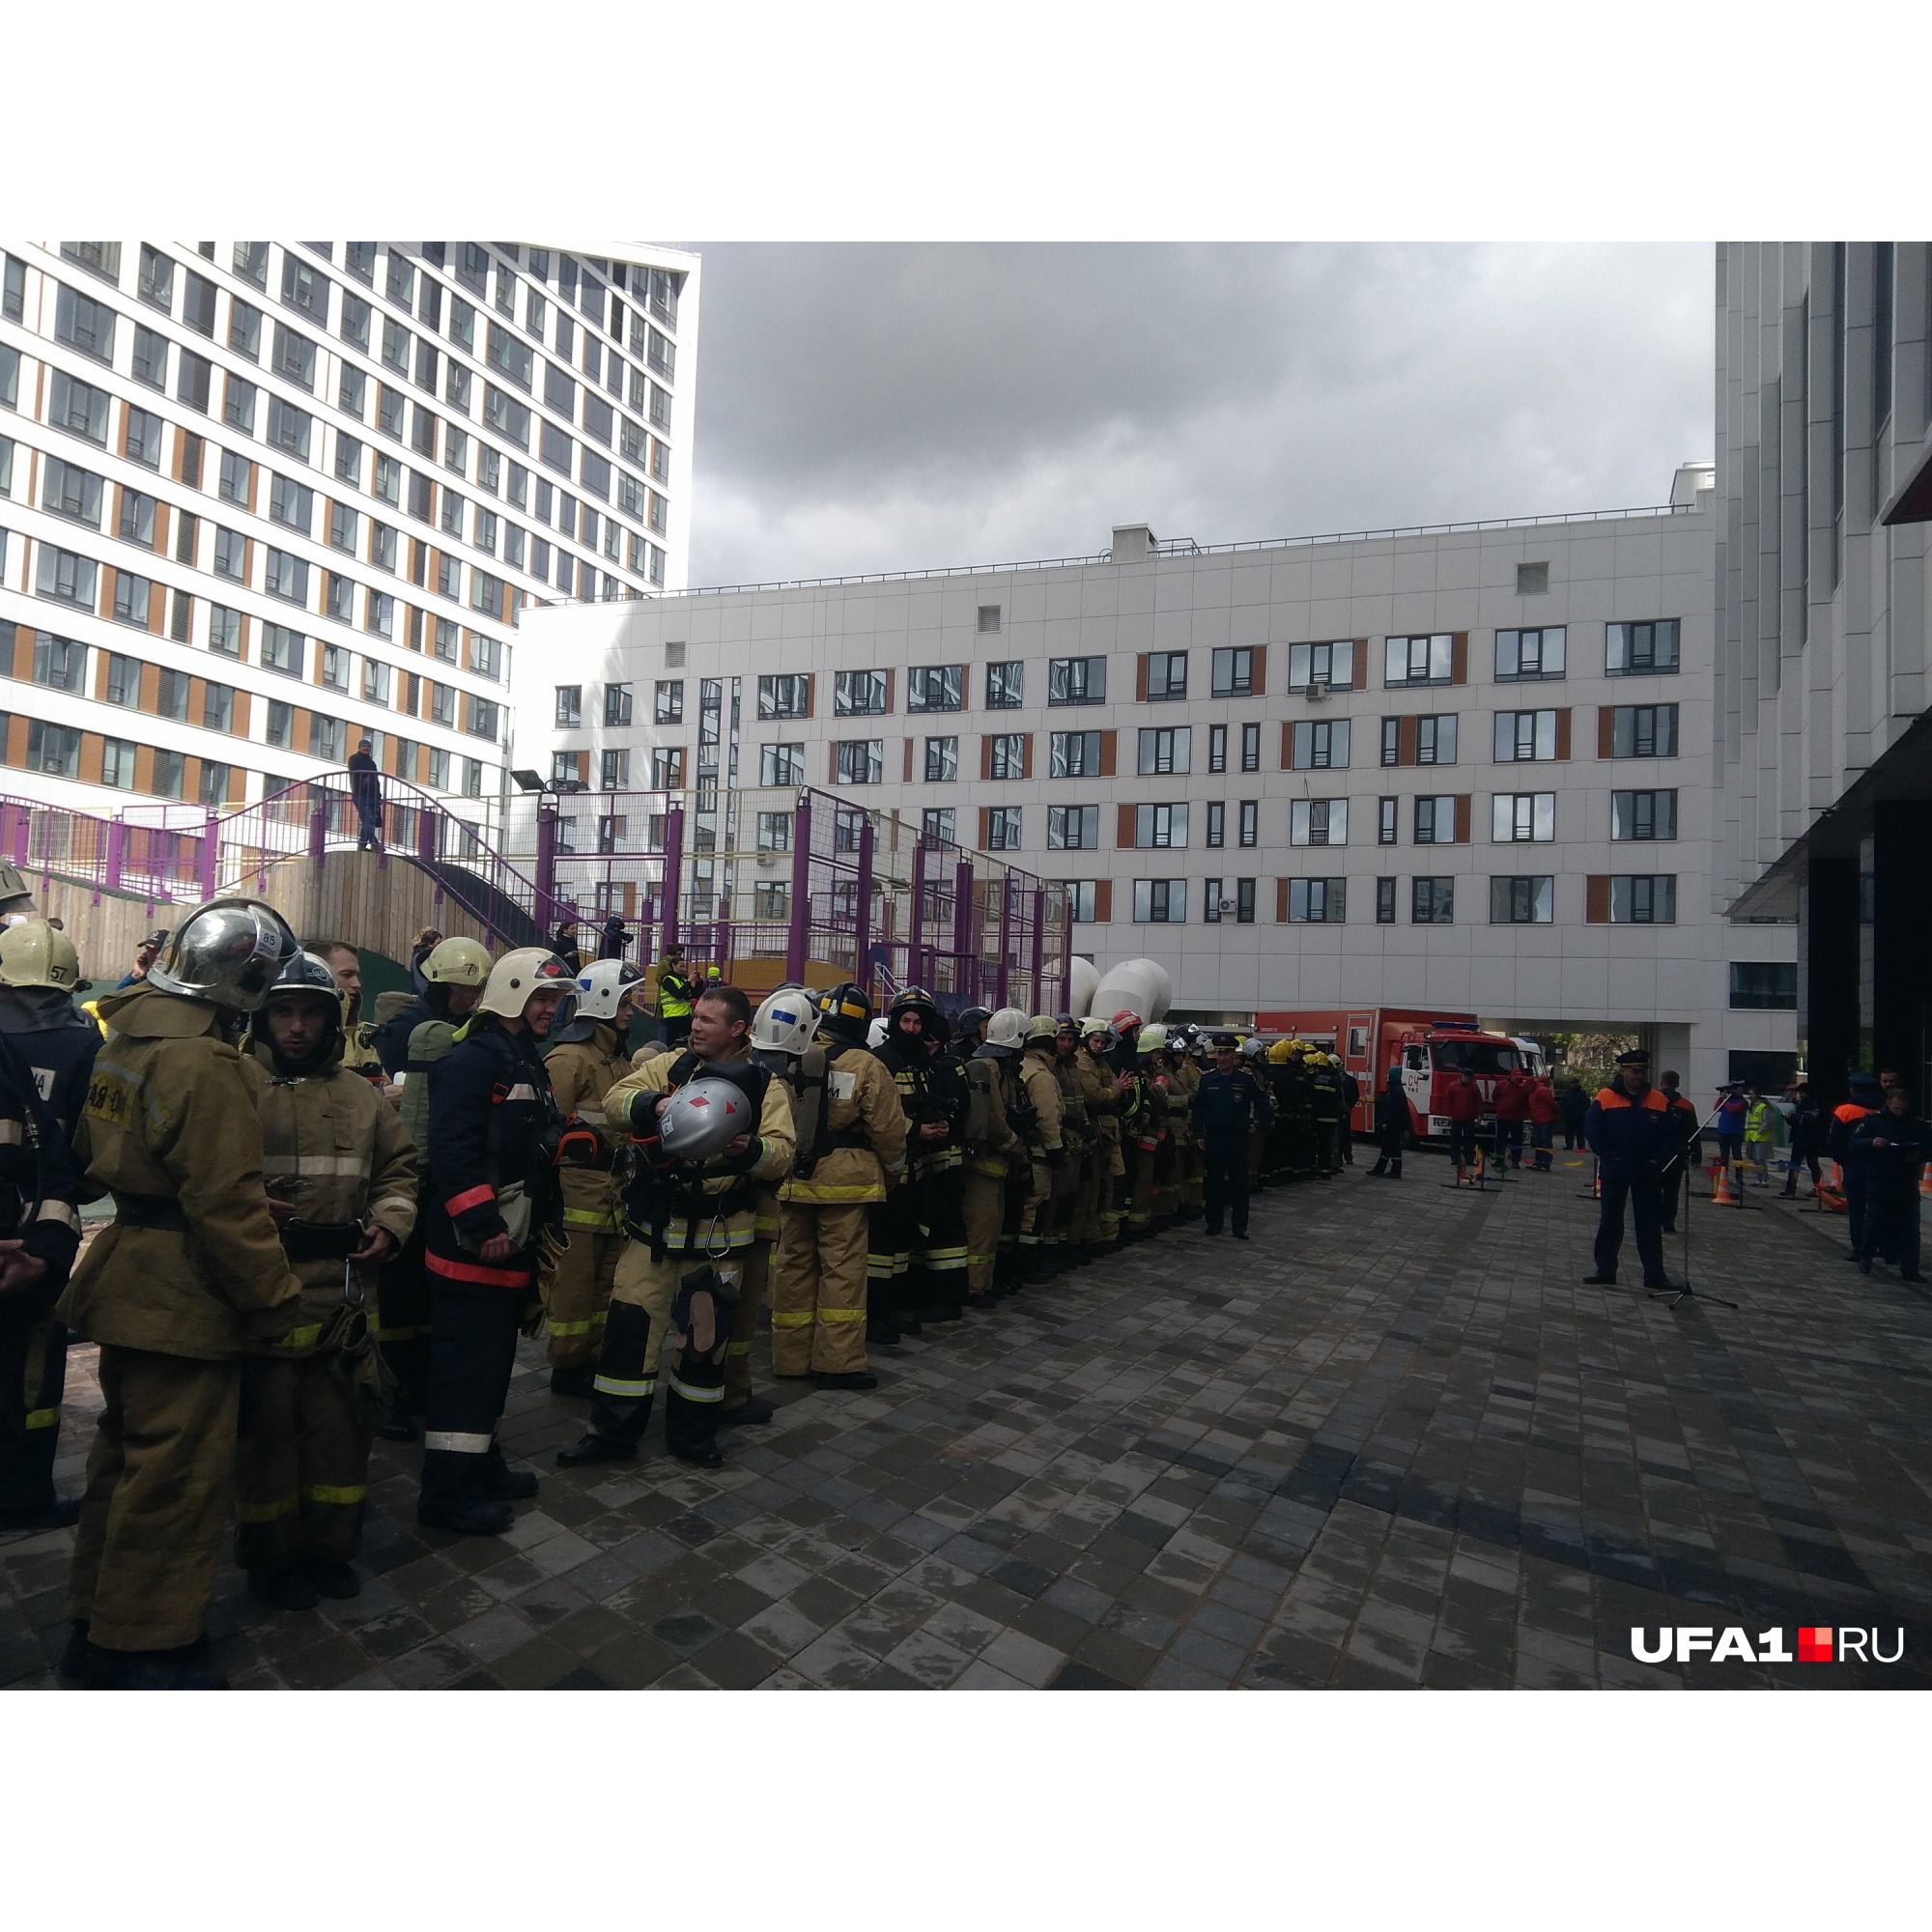 756 ступеней в полном обмундировании: как в Уфе пожарные на скорость 33-й этаж брали